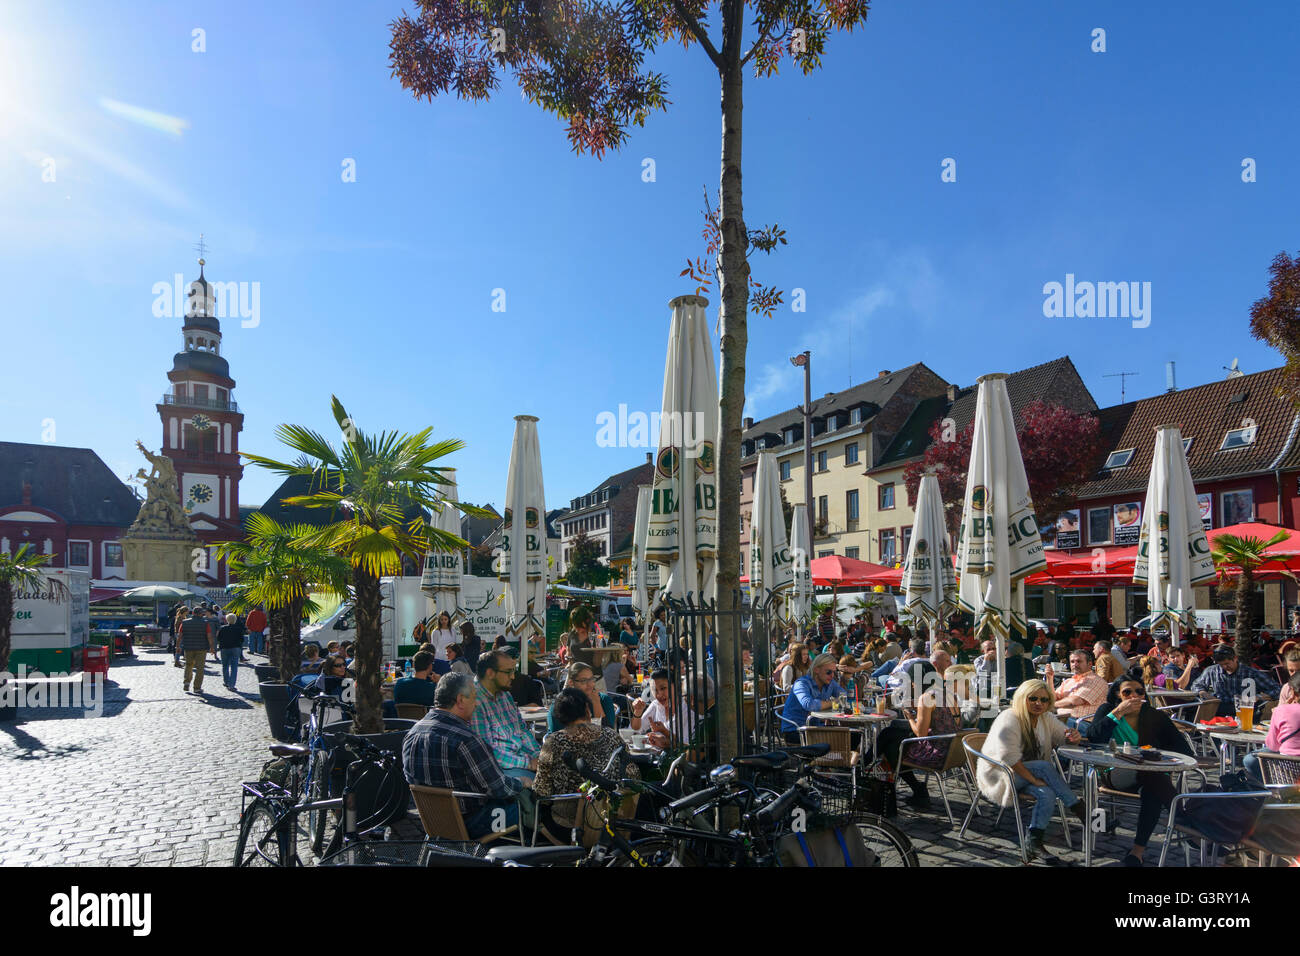 La plaza del mercado con el Ayuntamiento de la Ciudad Vieja y la iglesia de San Sebastián y restaurante exterior, Alemania, en el Estado federado de Baden-Württemberg, Kurpfalz, Mannh Foto de stock